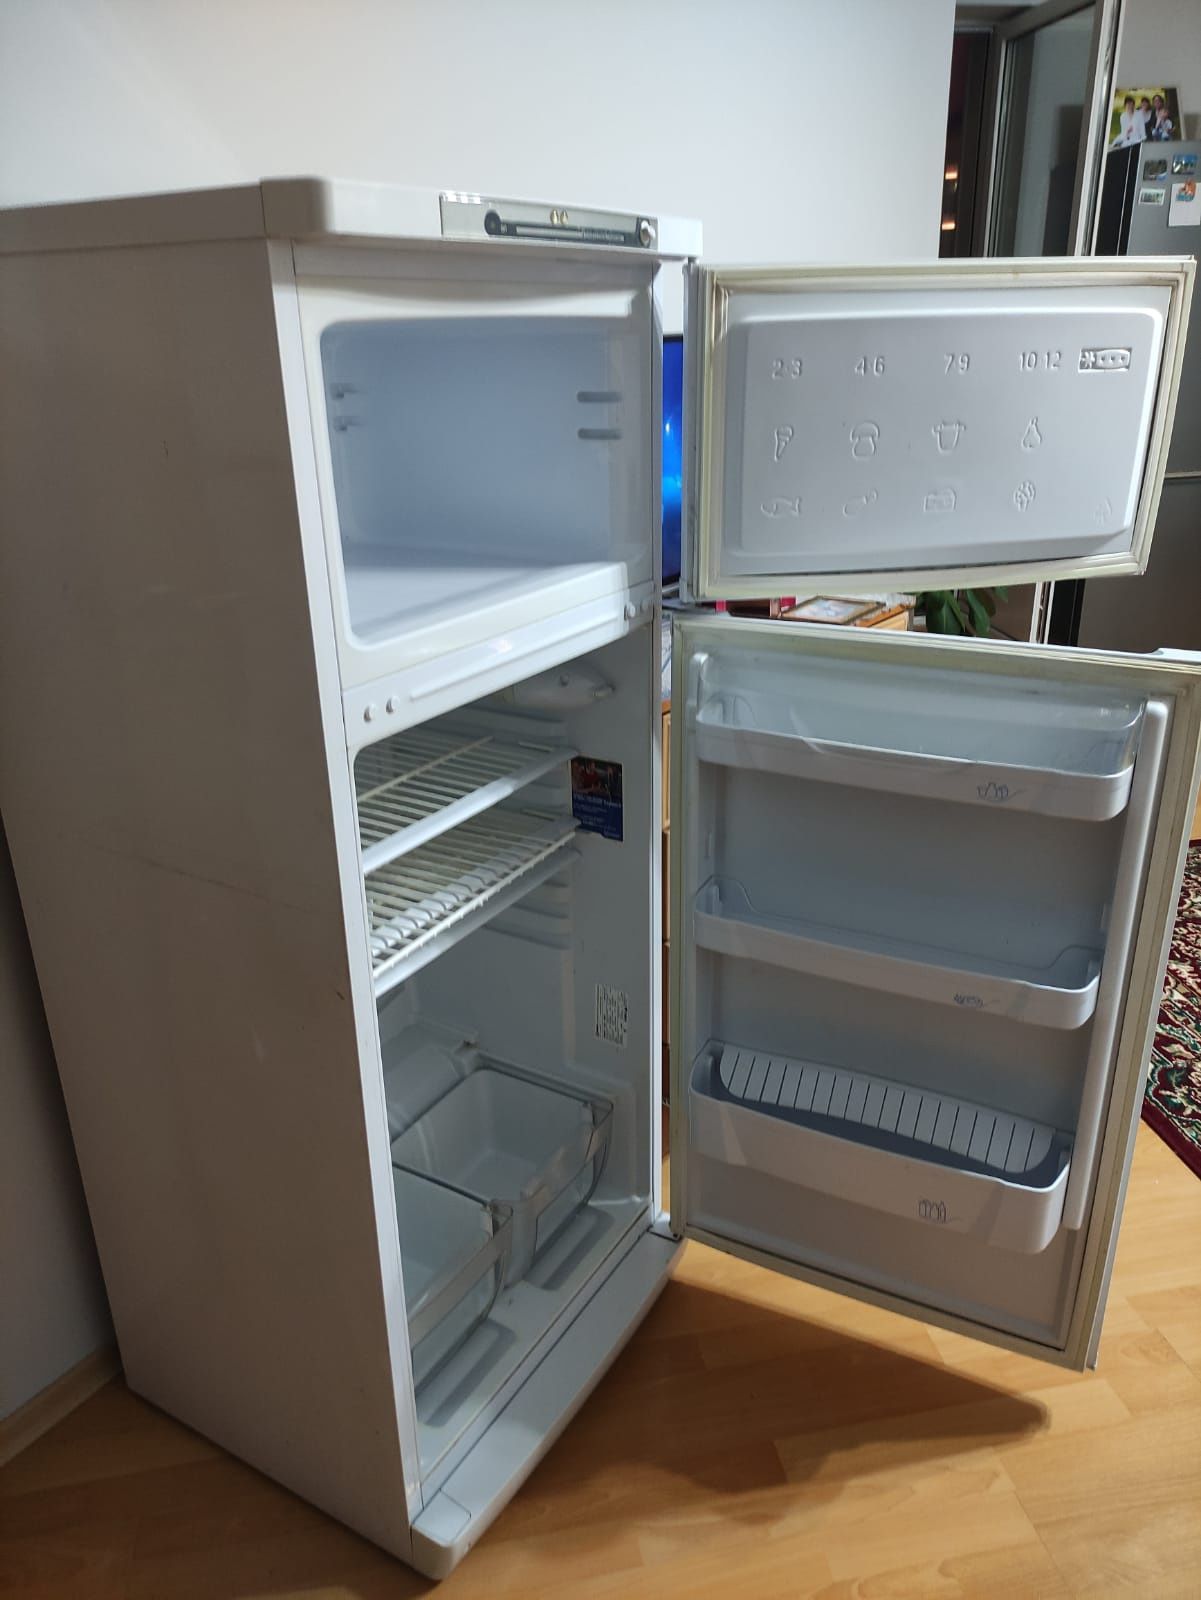 Продам холодильник!